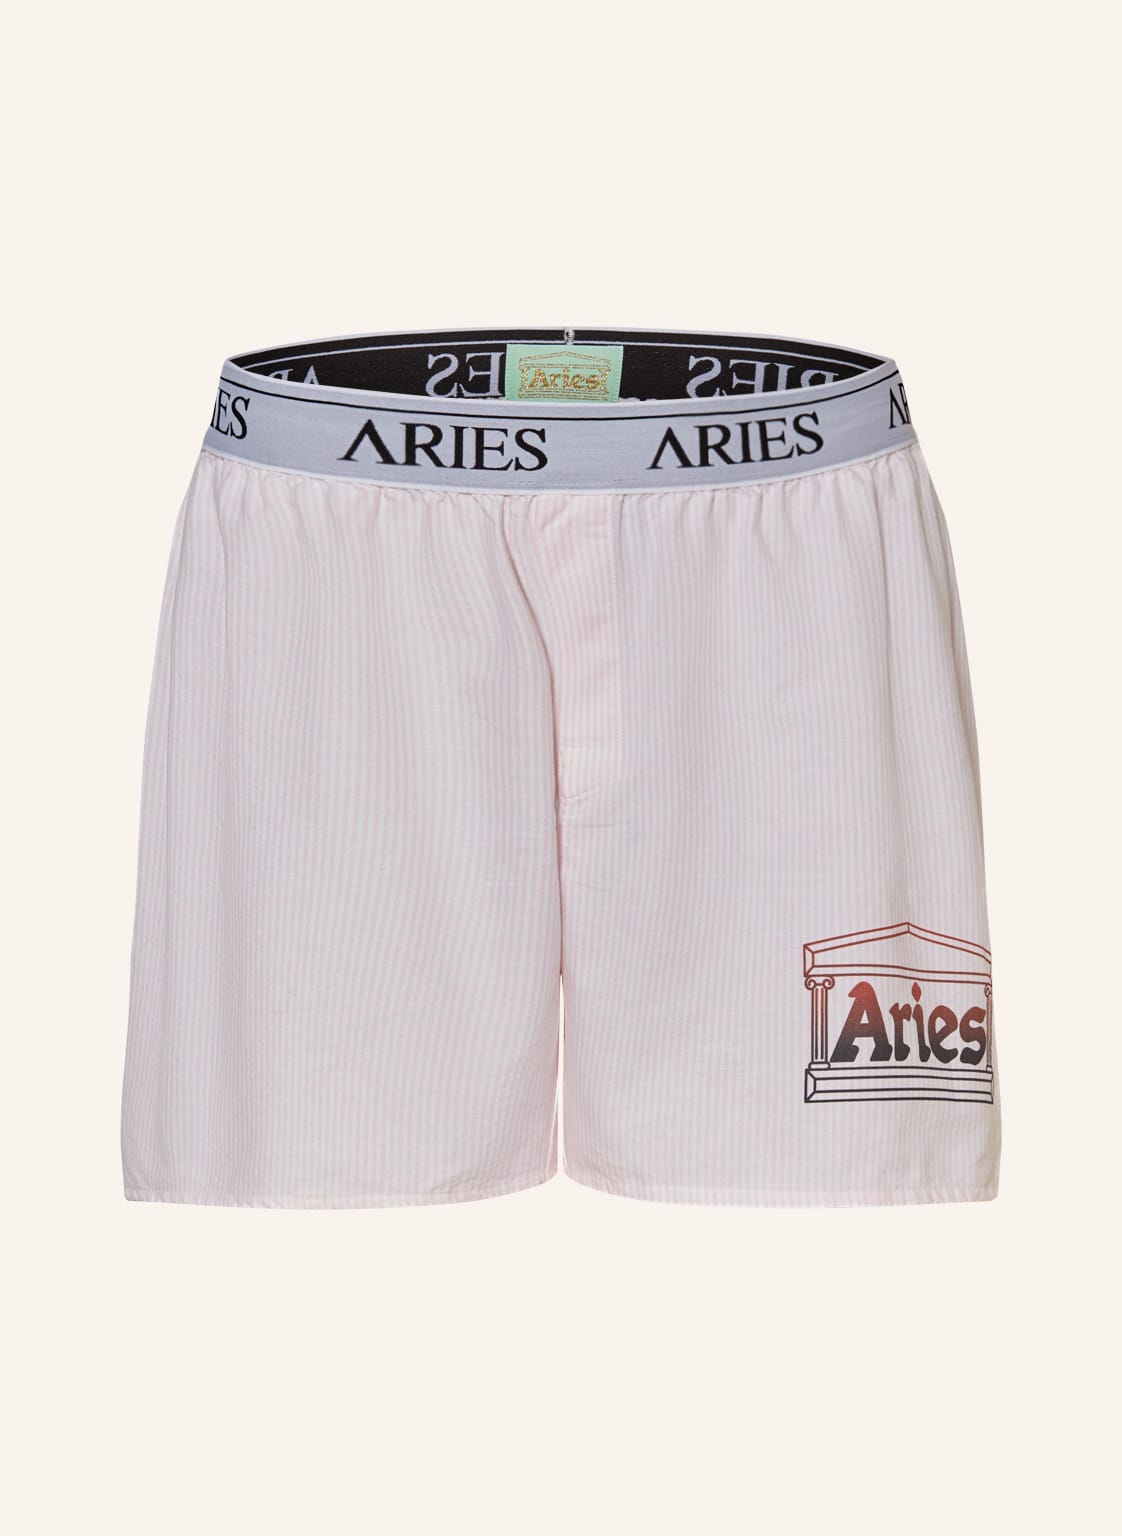 Image of Aries Arise Web-Boxershorts pink